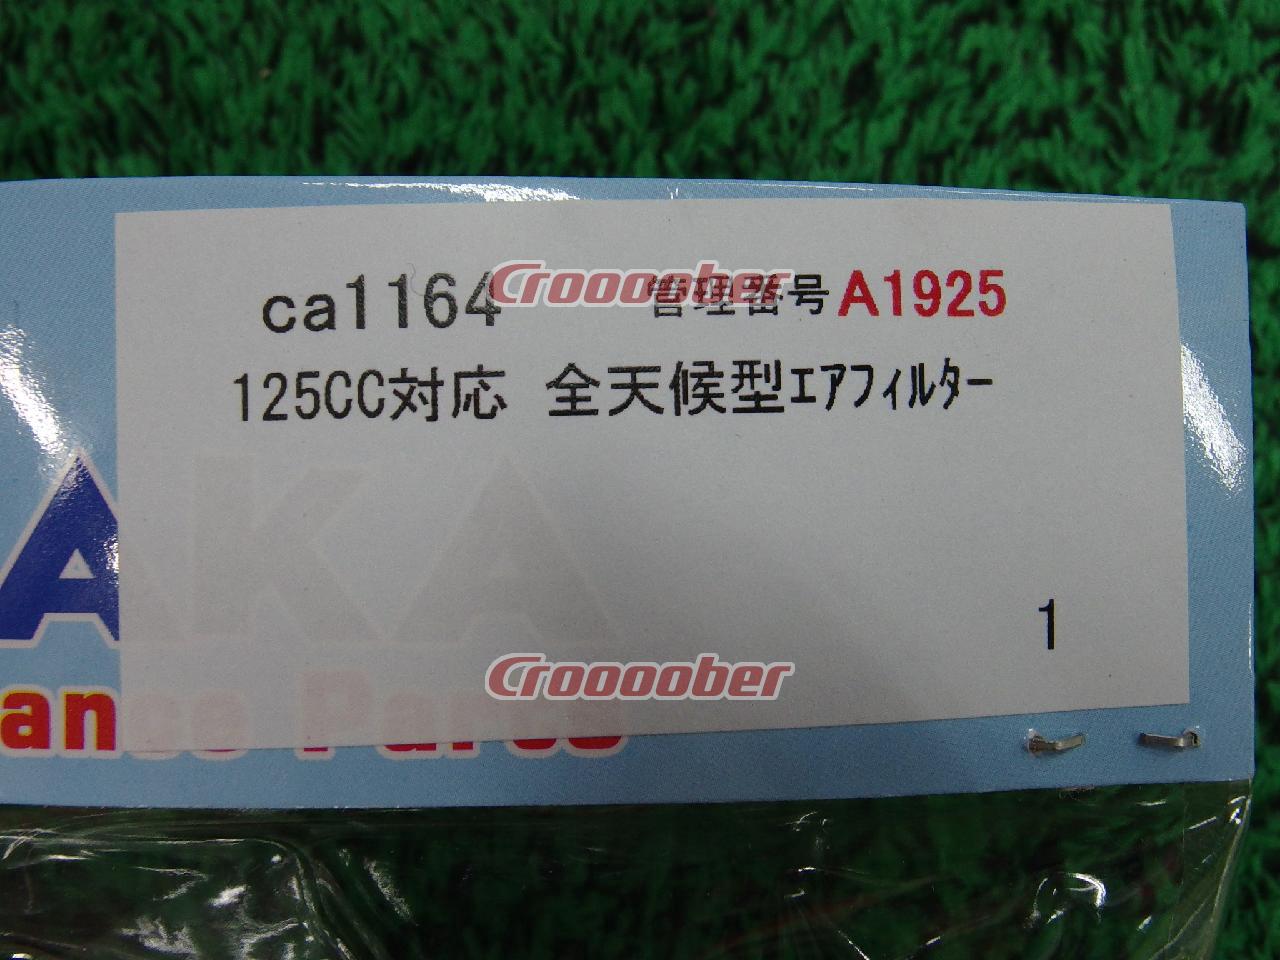 645円 誠実 田中商会 バイク エアフィルター CA1164 125CC対応 全天候型エアフィルター